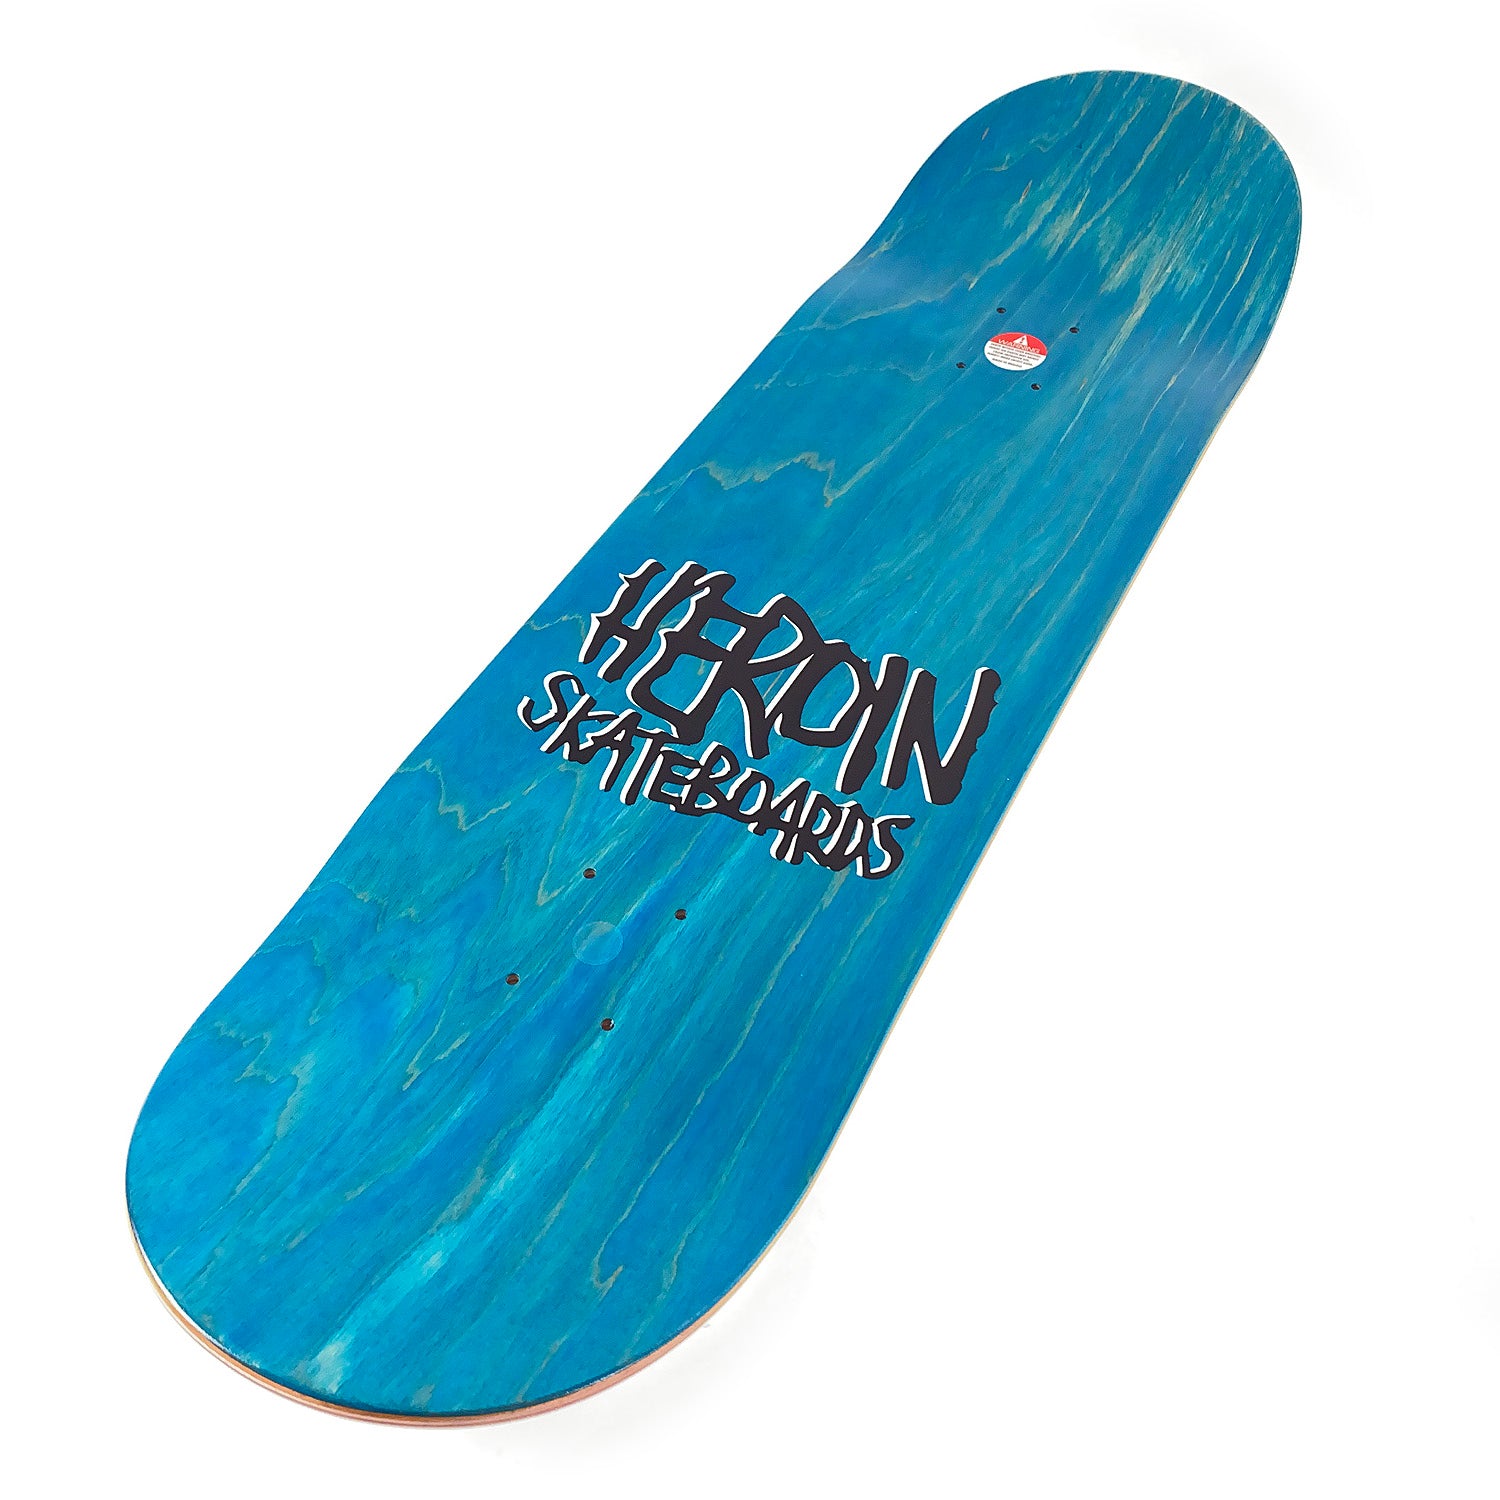 Heroin Skateboards - 9" - Zane Timpson ‘Very Nice Board’ Deck - White - Prime Delux Store